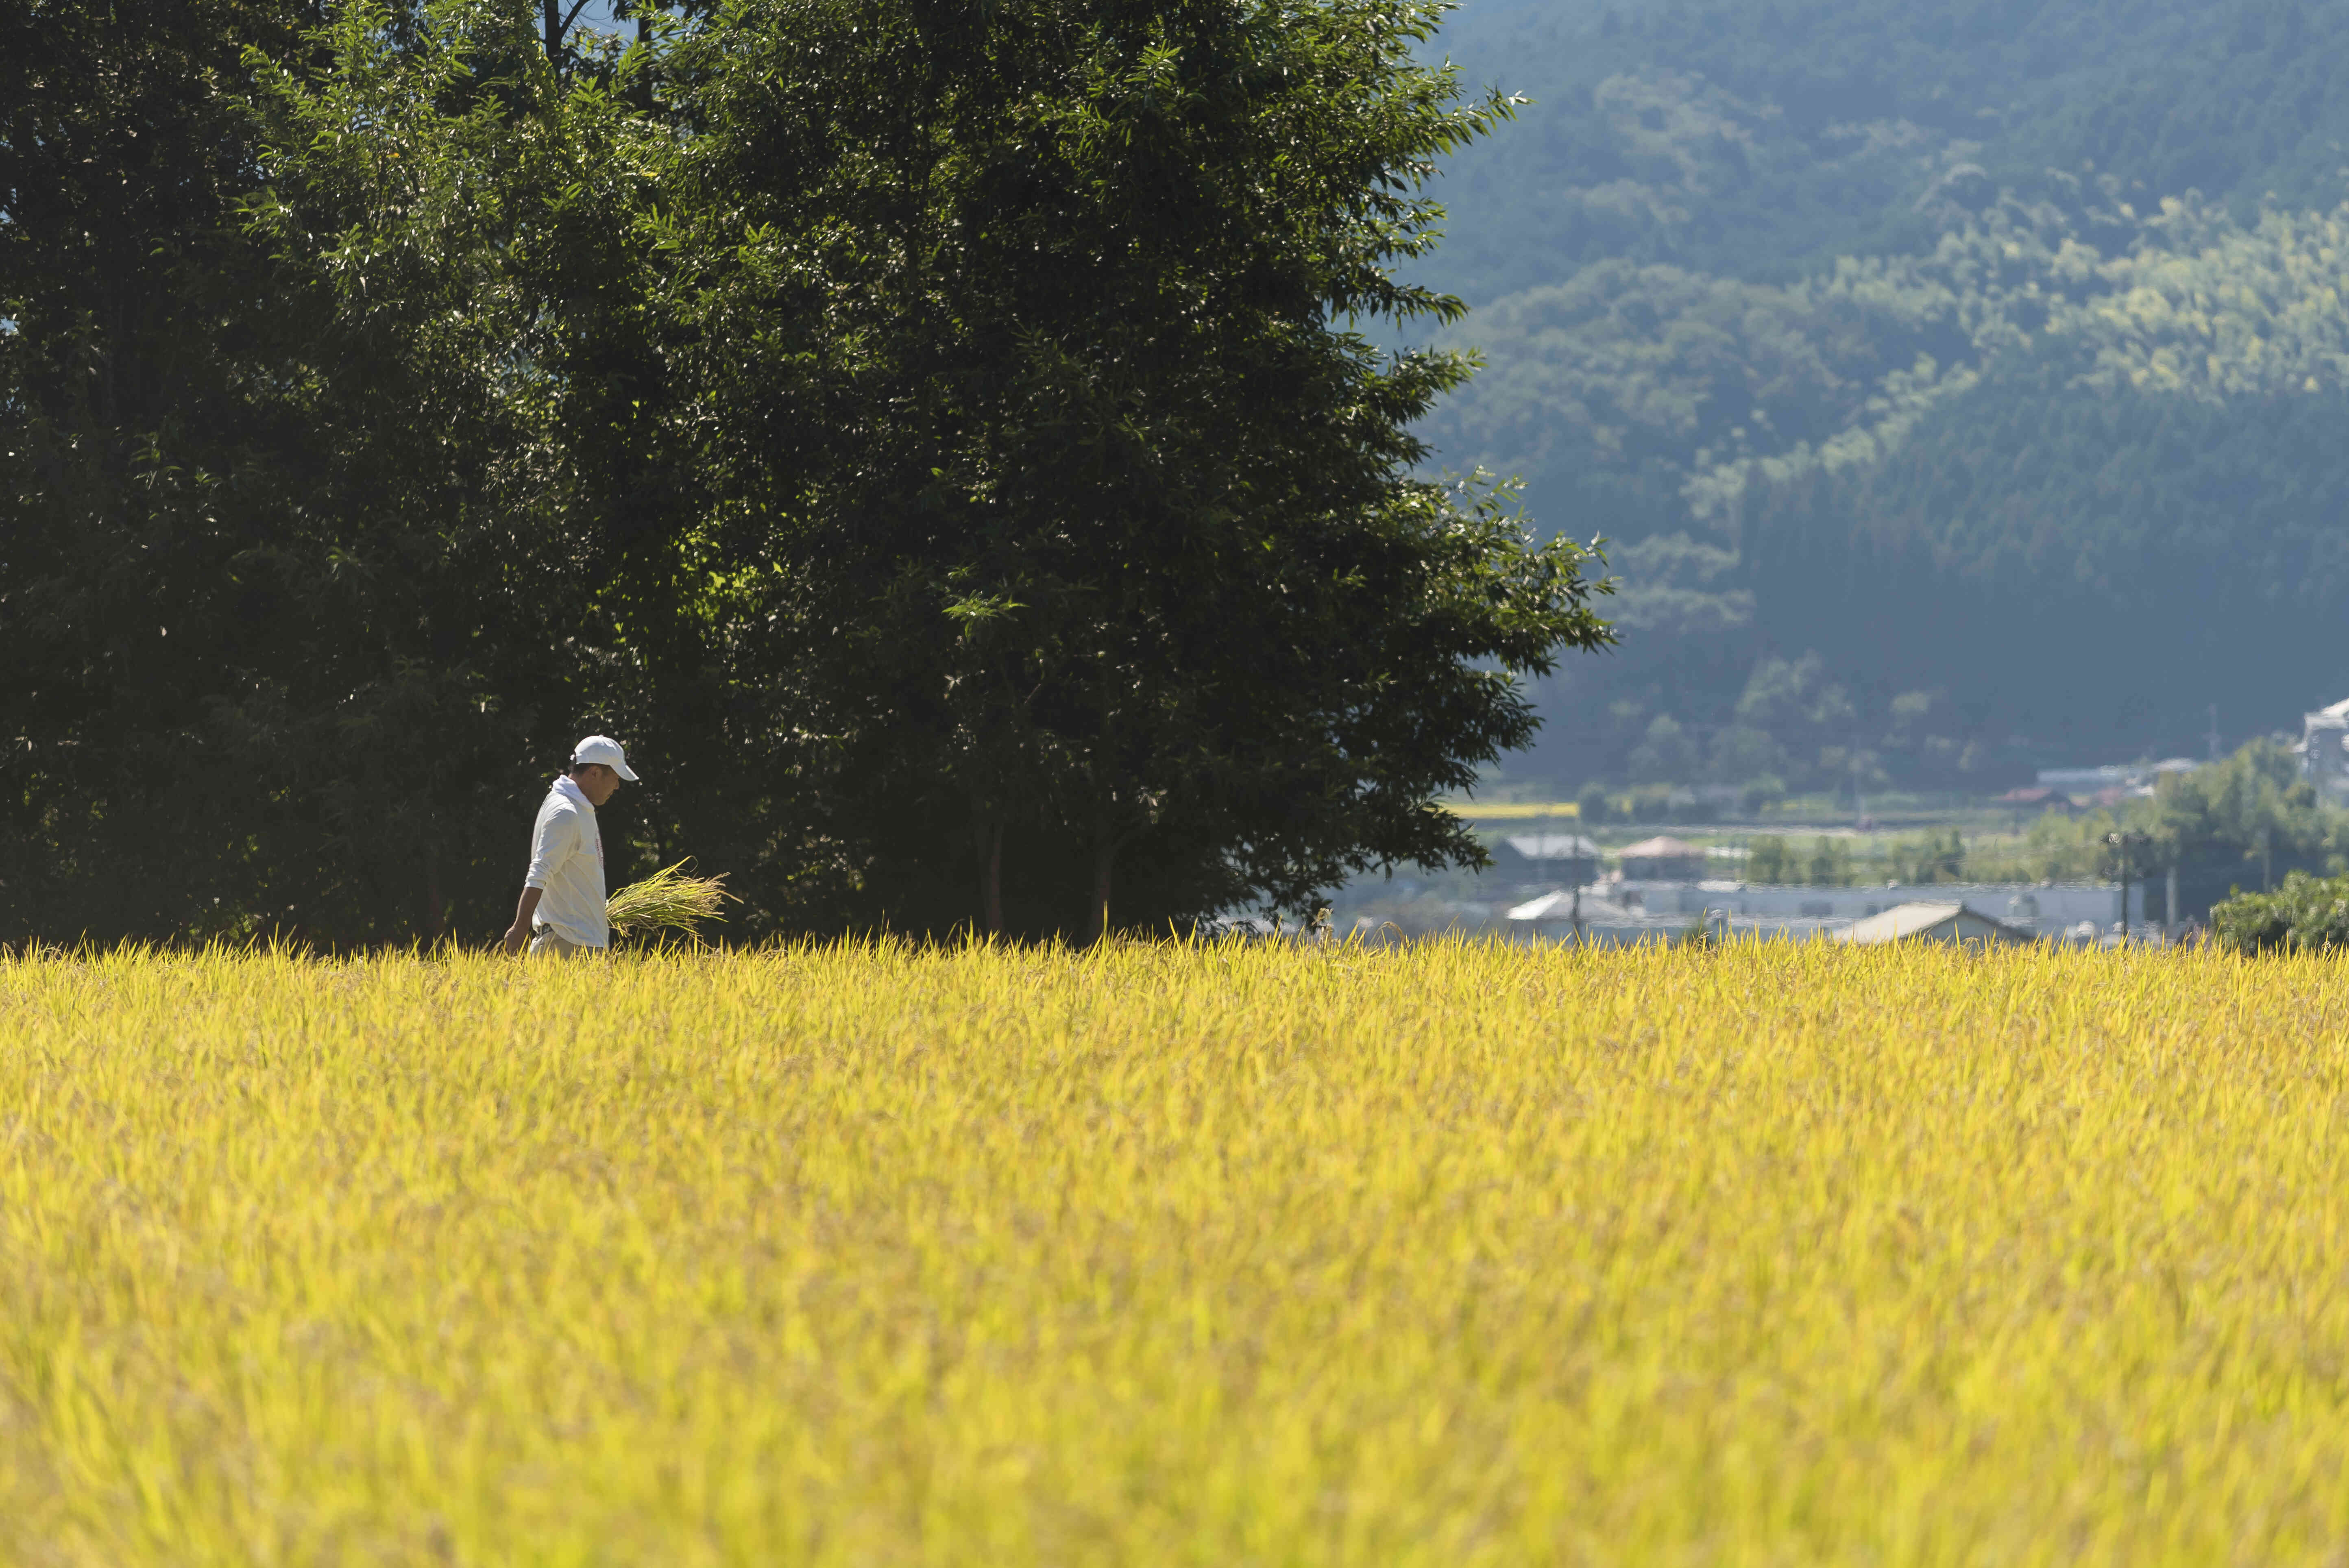 原料米の田んぼ風景